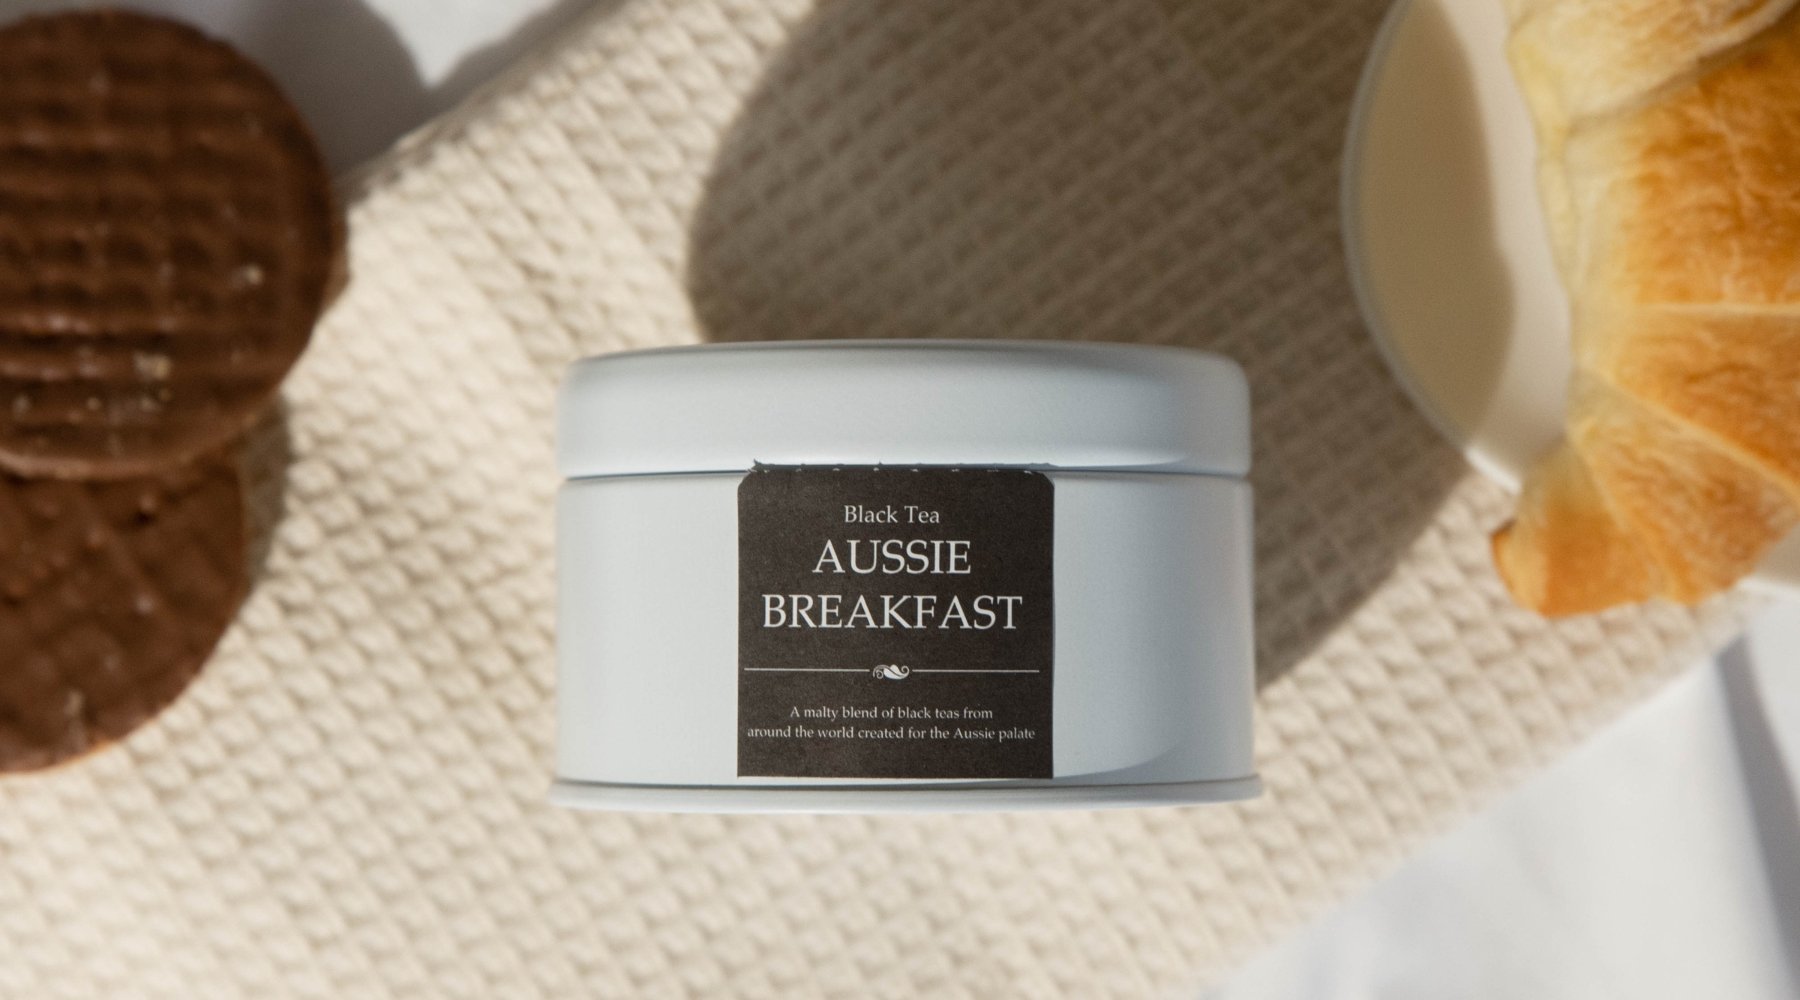 Aussie Breakfast Small Tin | Tavalon Tea Australia & New Zealand